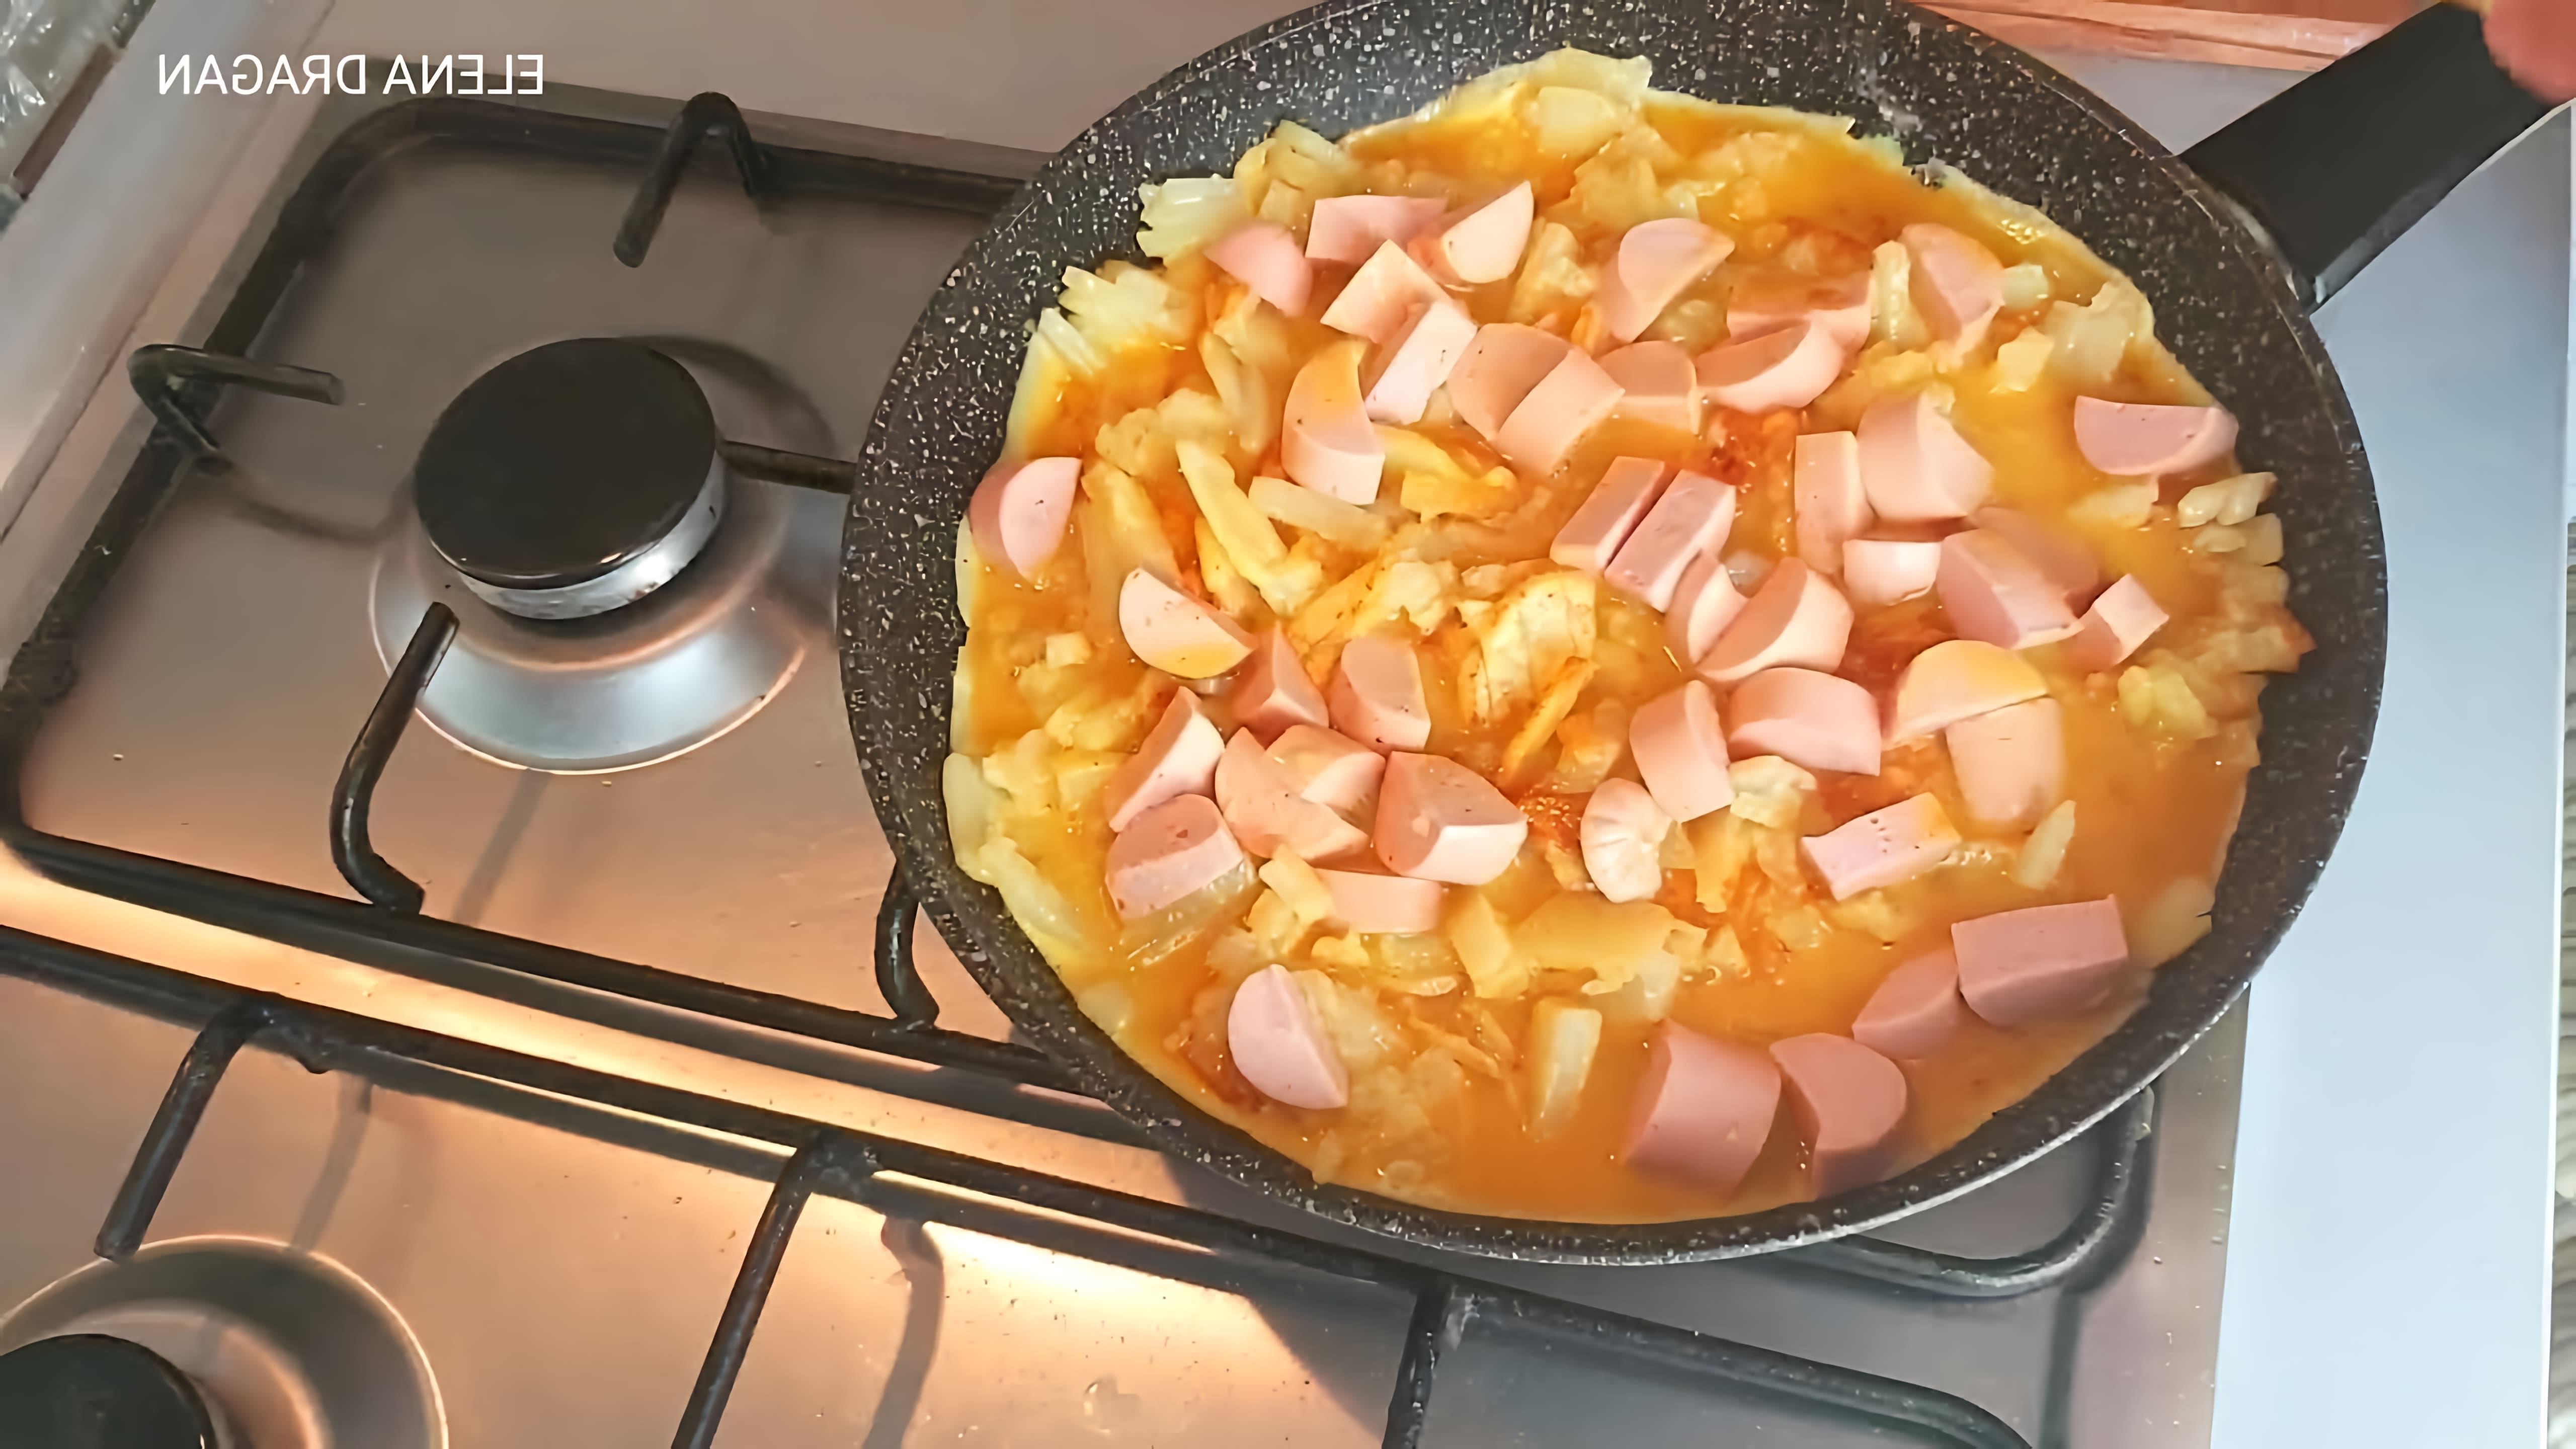 Если у вас есть картофель, яйца и сосиски, то вы можете приготовить вкусное и питательное блюдо, которое понравится всем